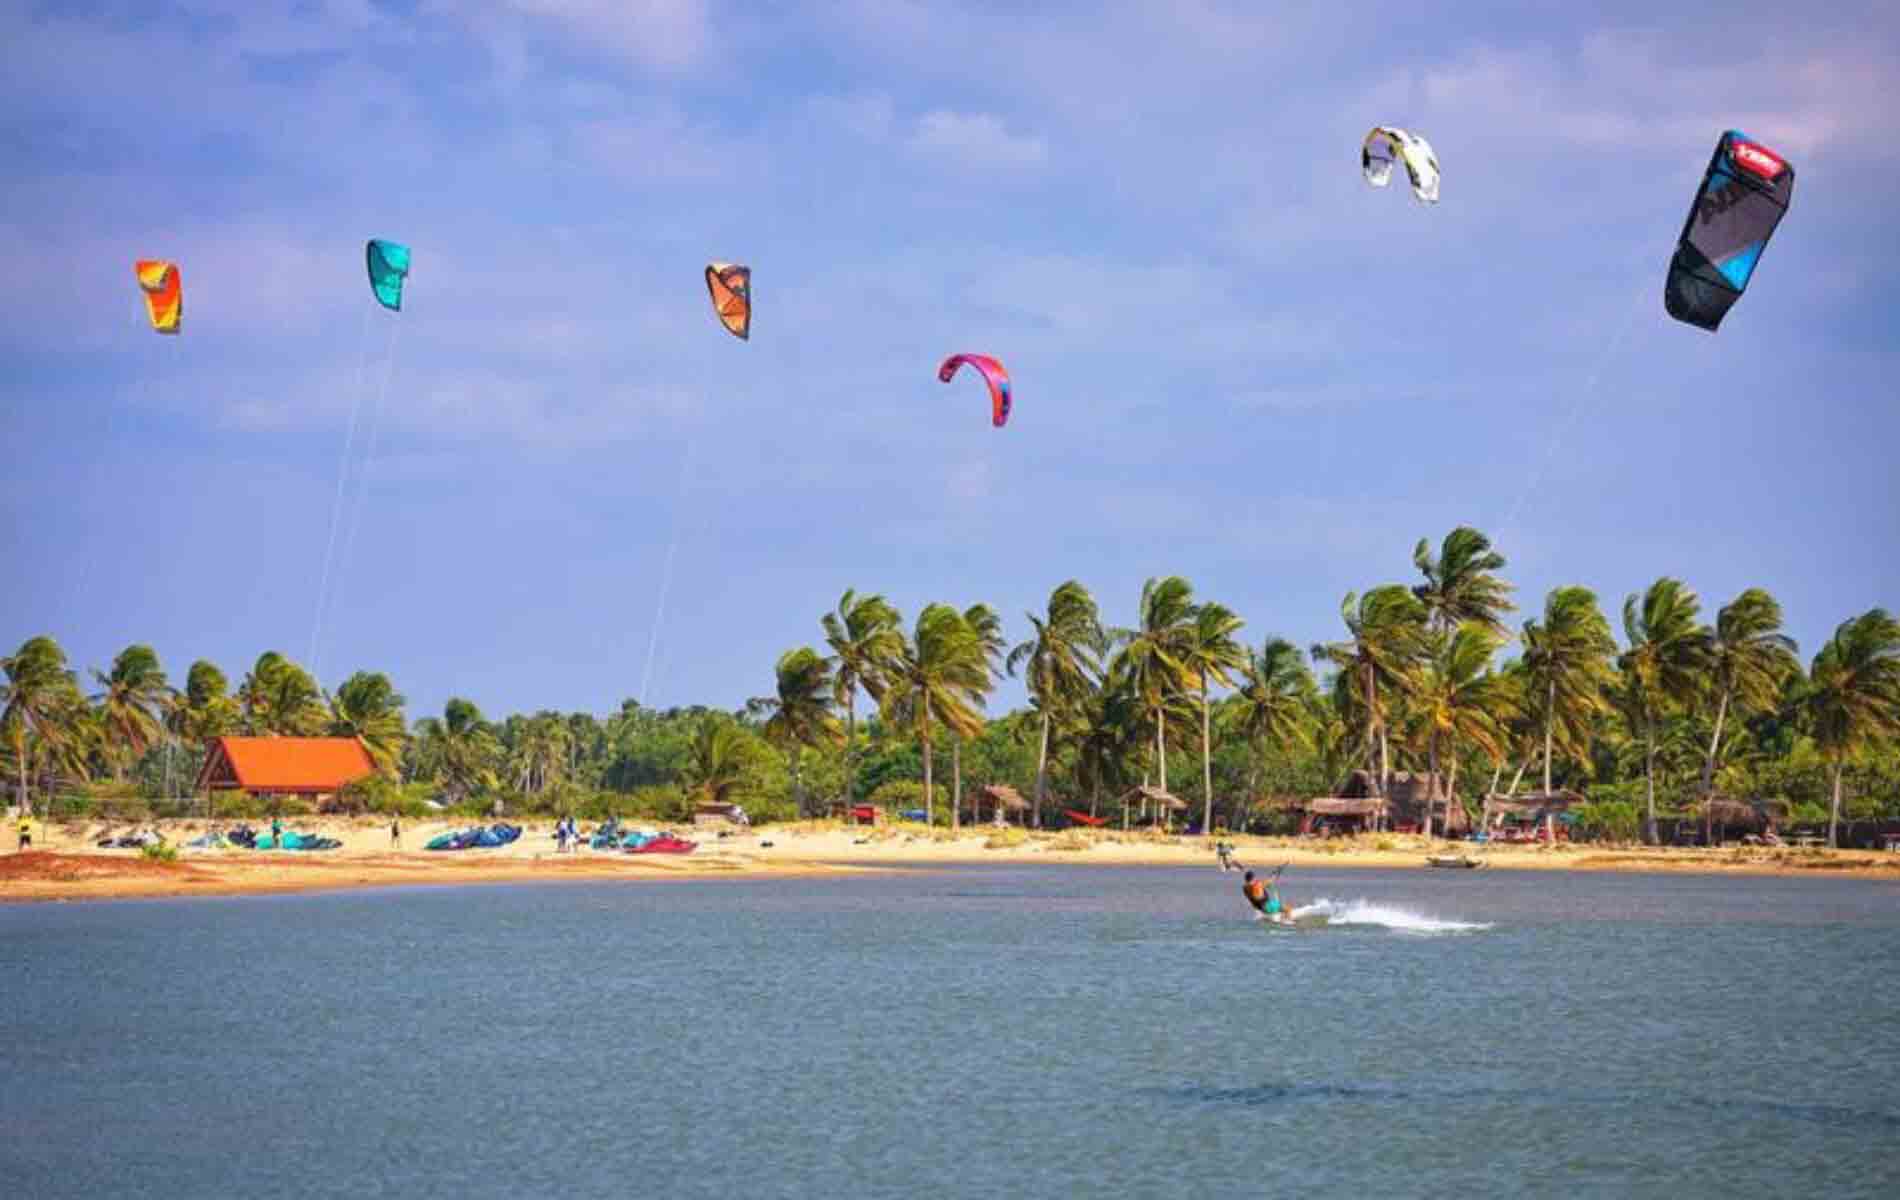 Kitesurfing in Sri Lanka